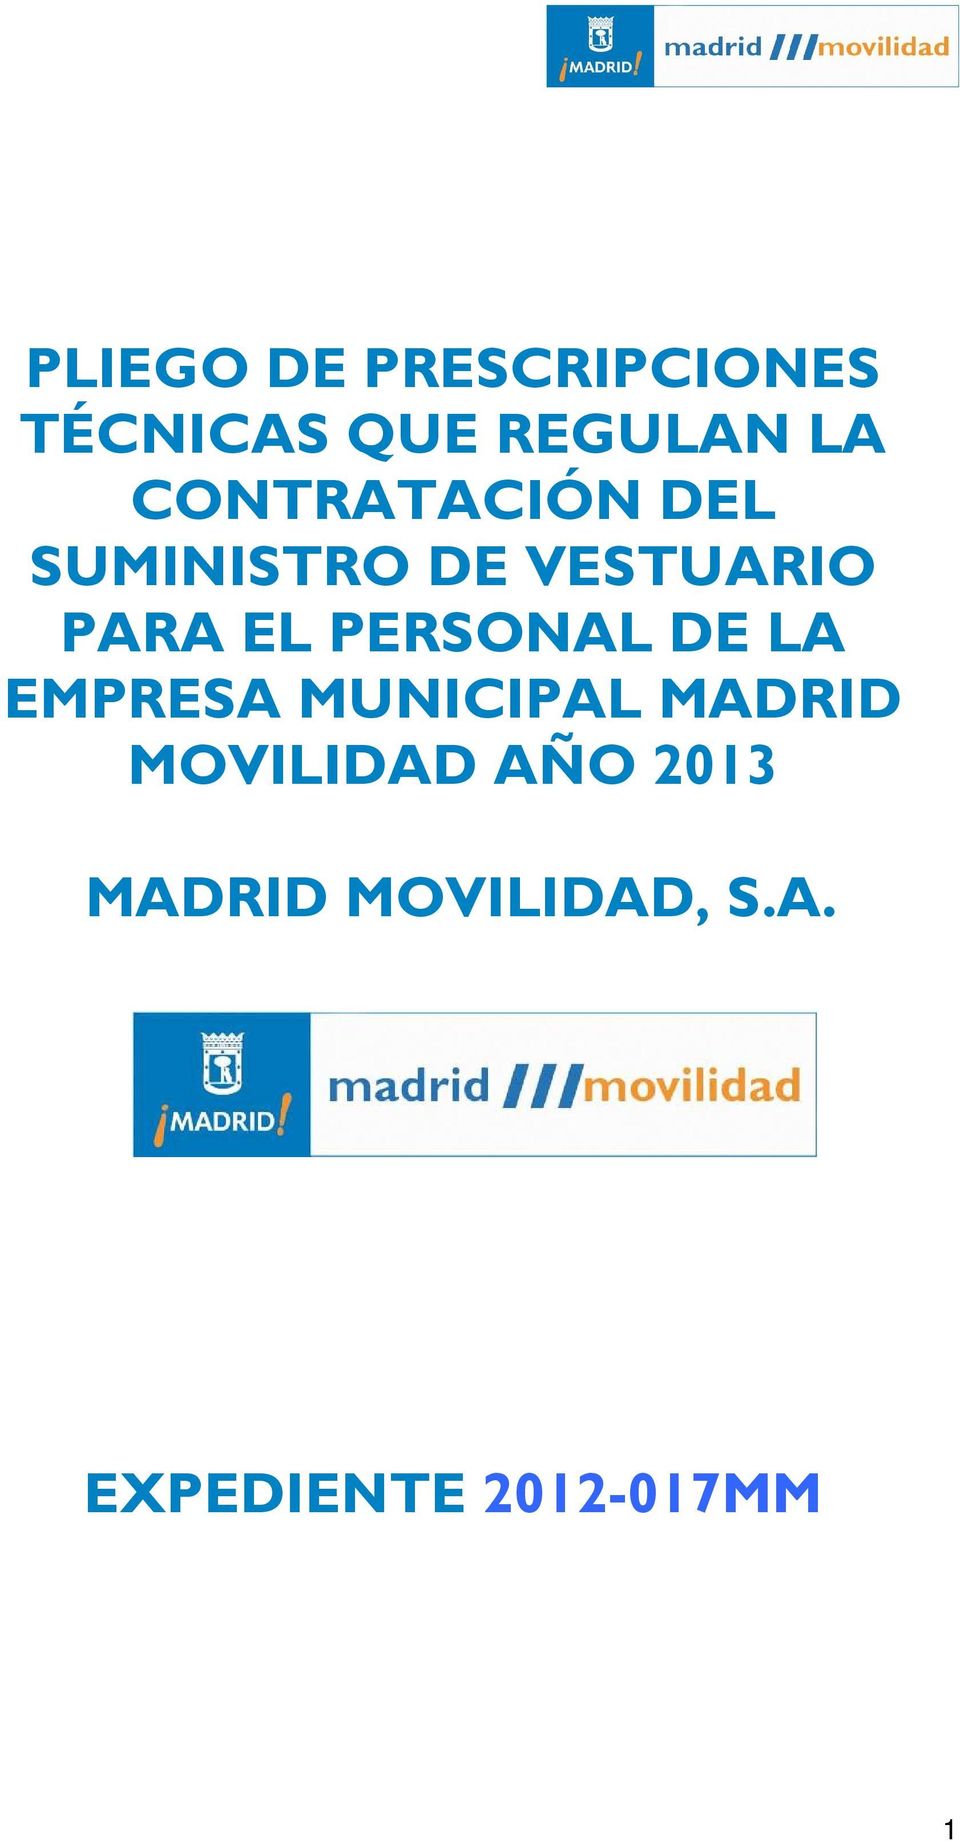 PERSONAL DE LA EMPRESA MUNICIPAL MADRID MOVILIDAD